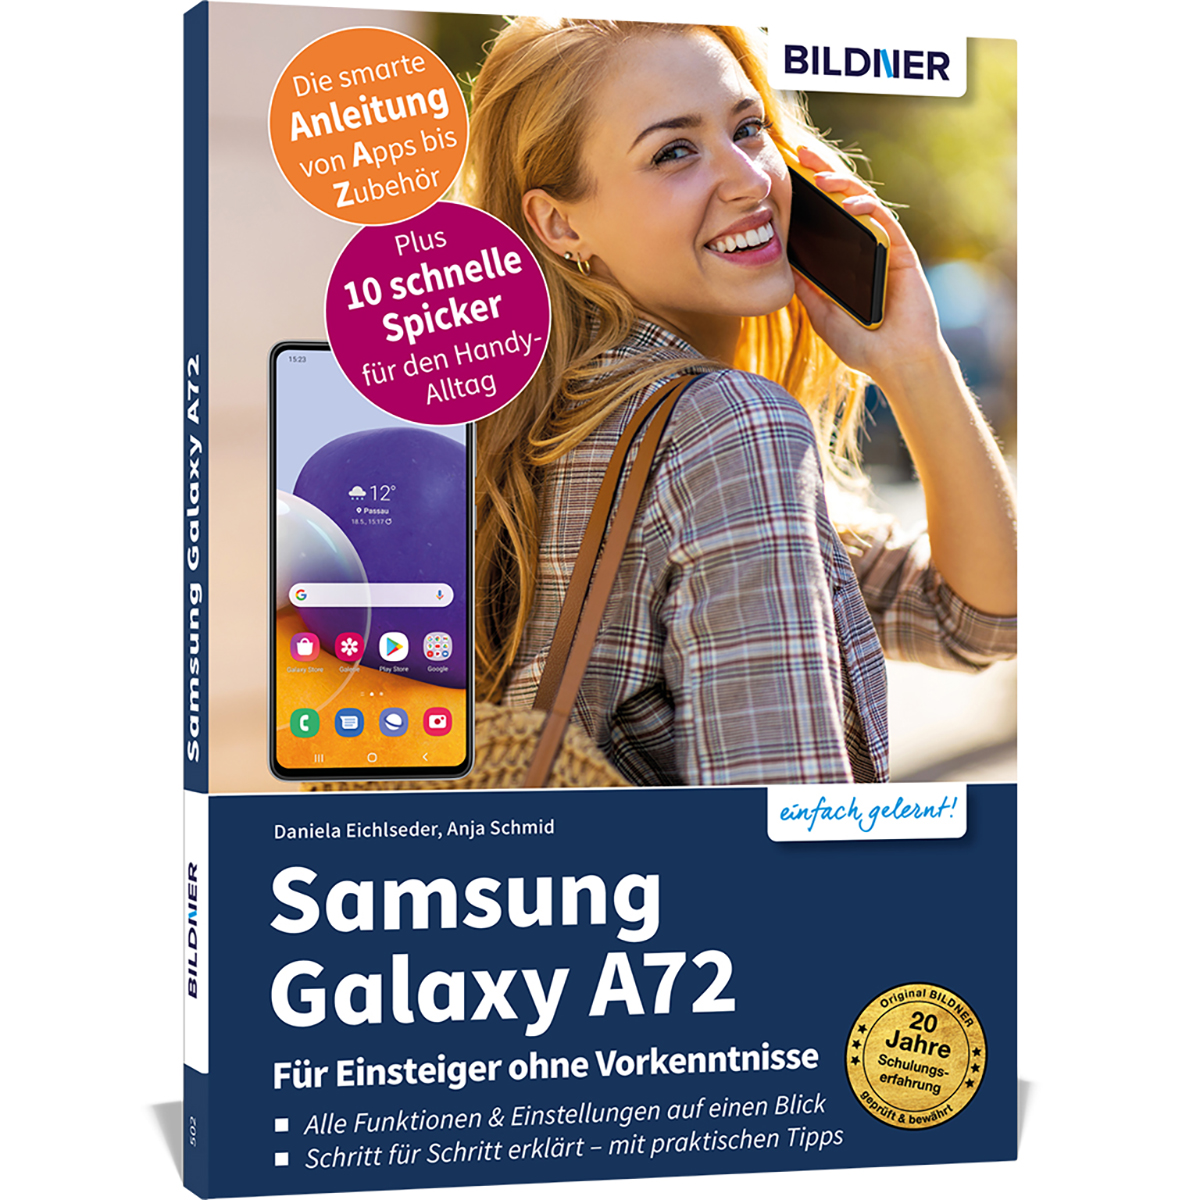 ohne Samsung - Für Galaxy A72 Einsteiger Vorkenntnisse